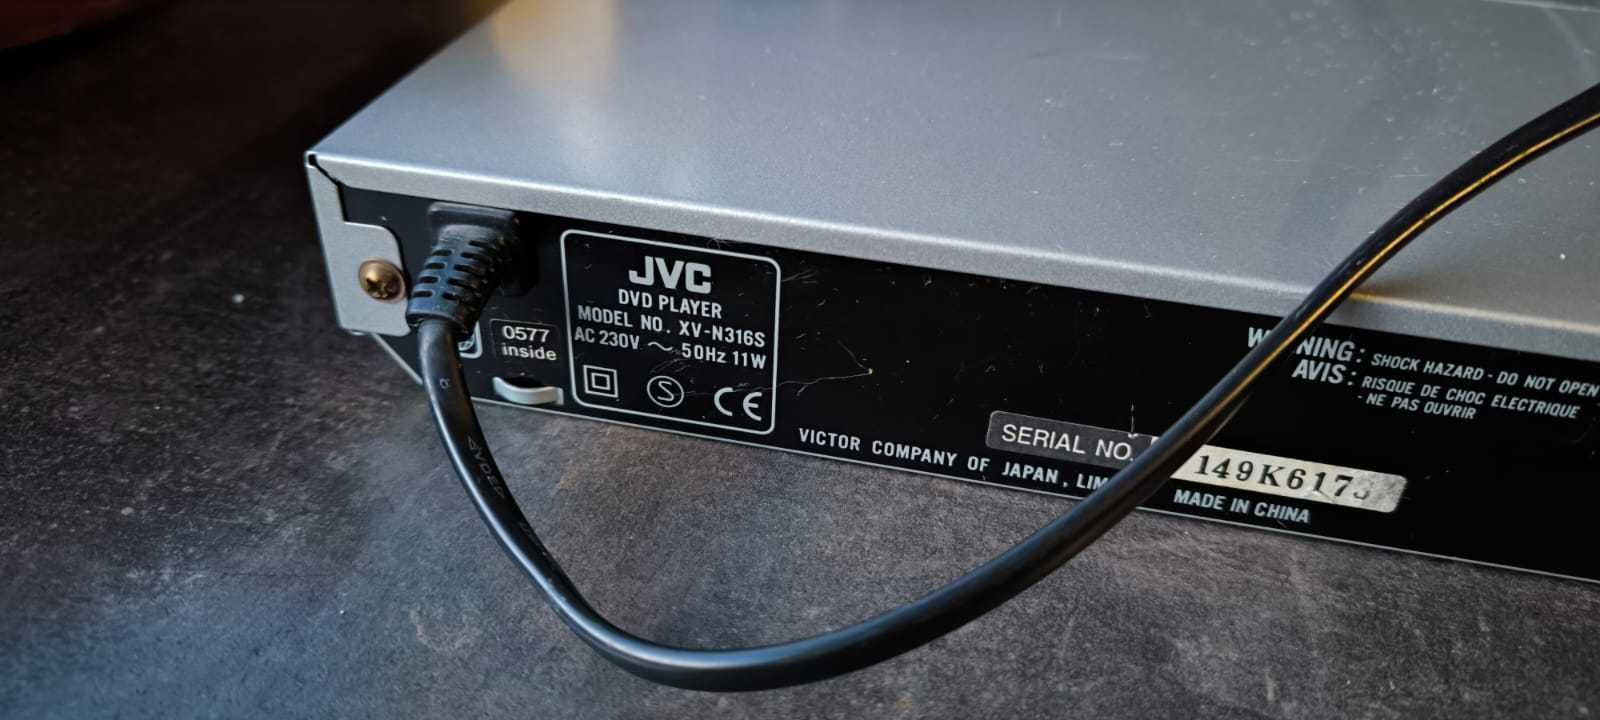 Odtwarzacz DVD JVC made in Japan